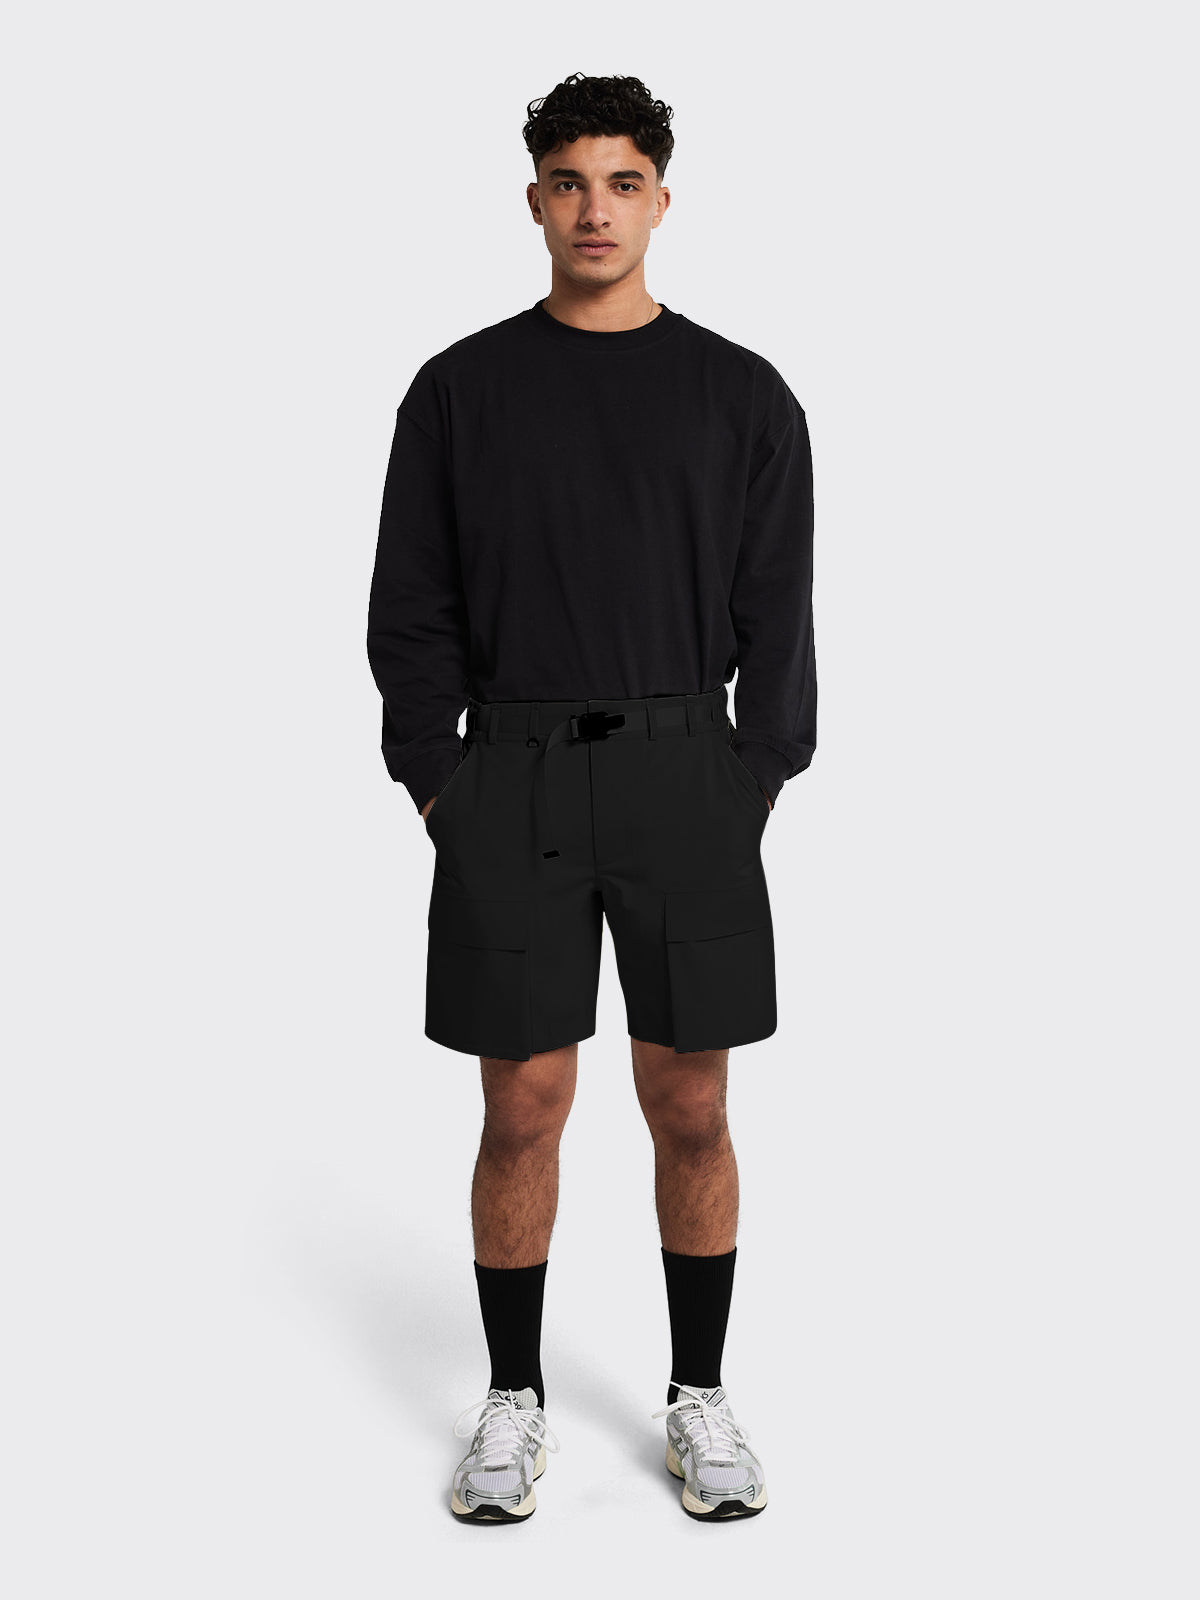 Man dressed in Giske shorts by Blæst in Black